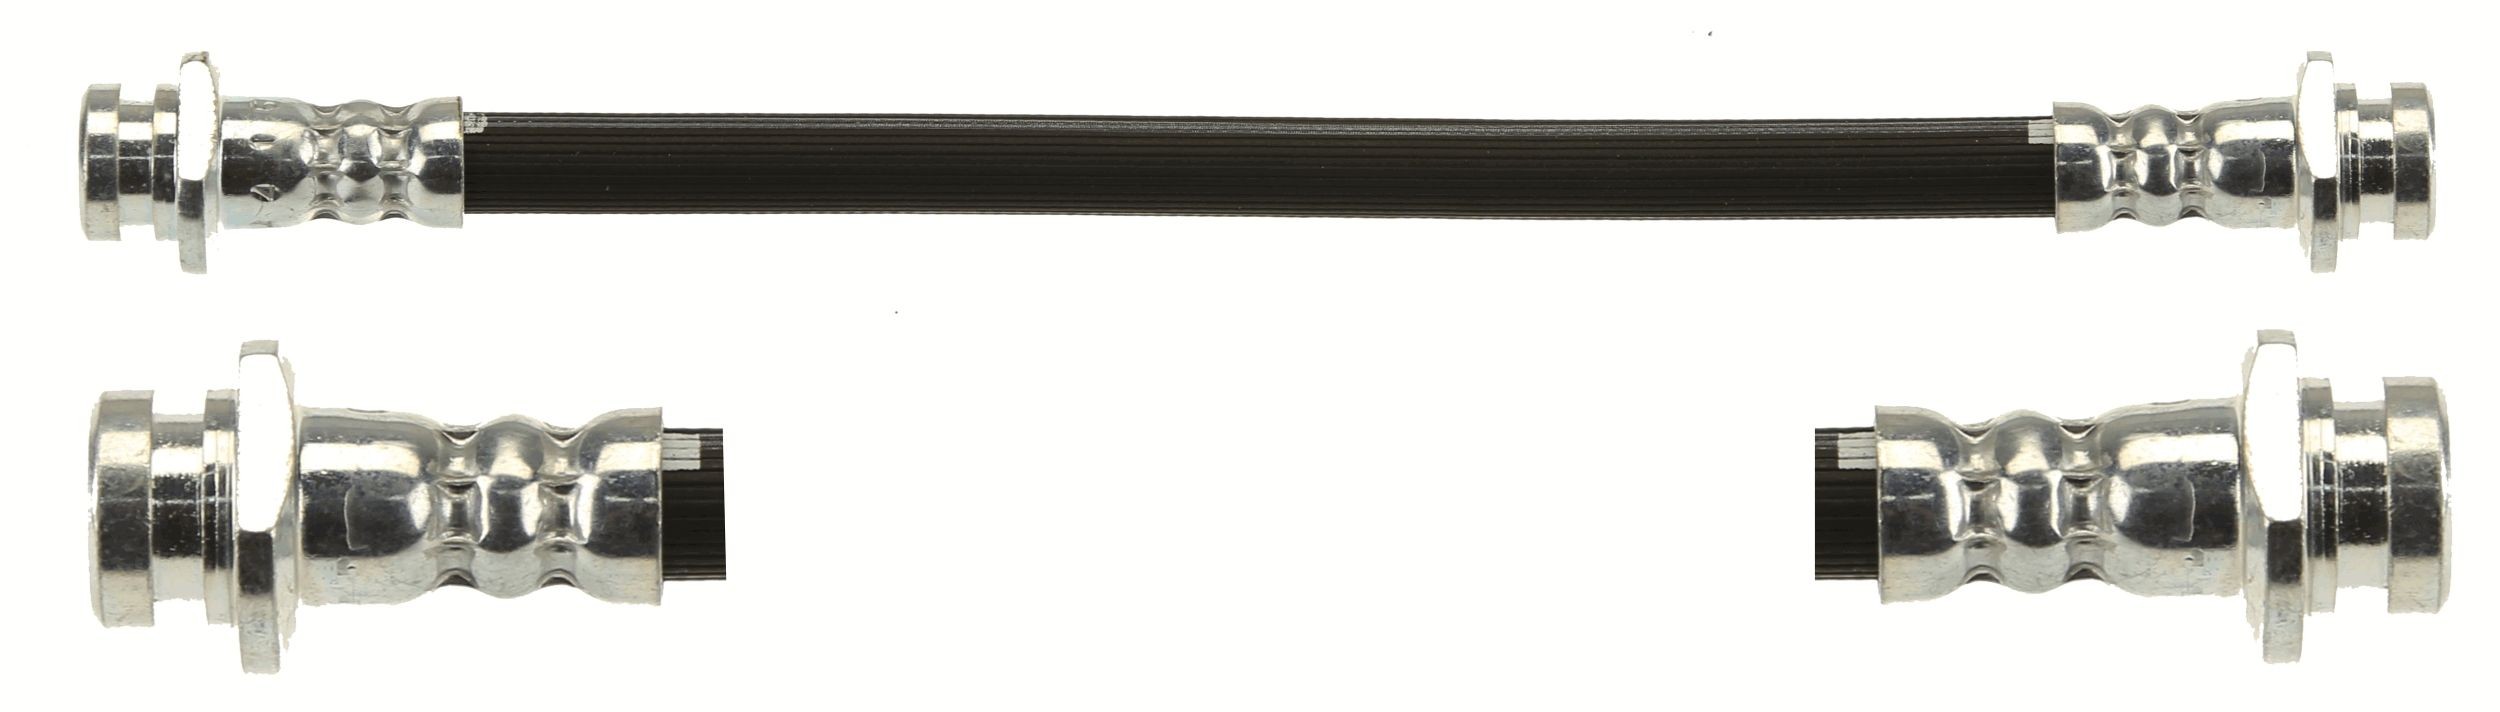 TRW PHA620 Bremsschläuche 215mm, M10x1